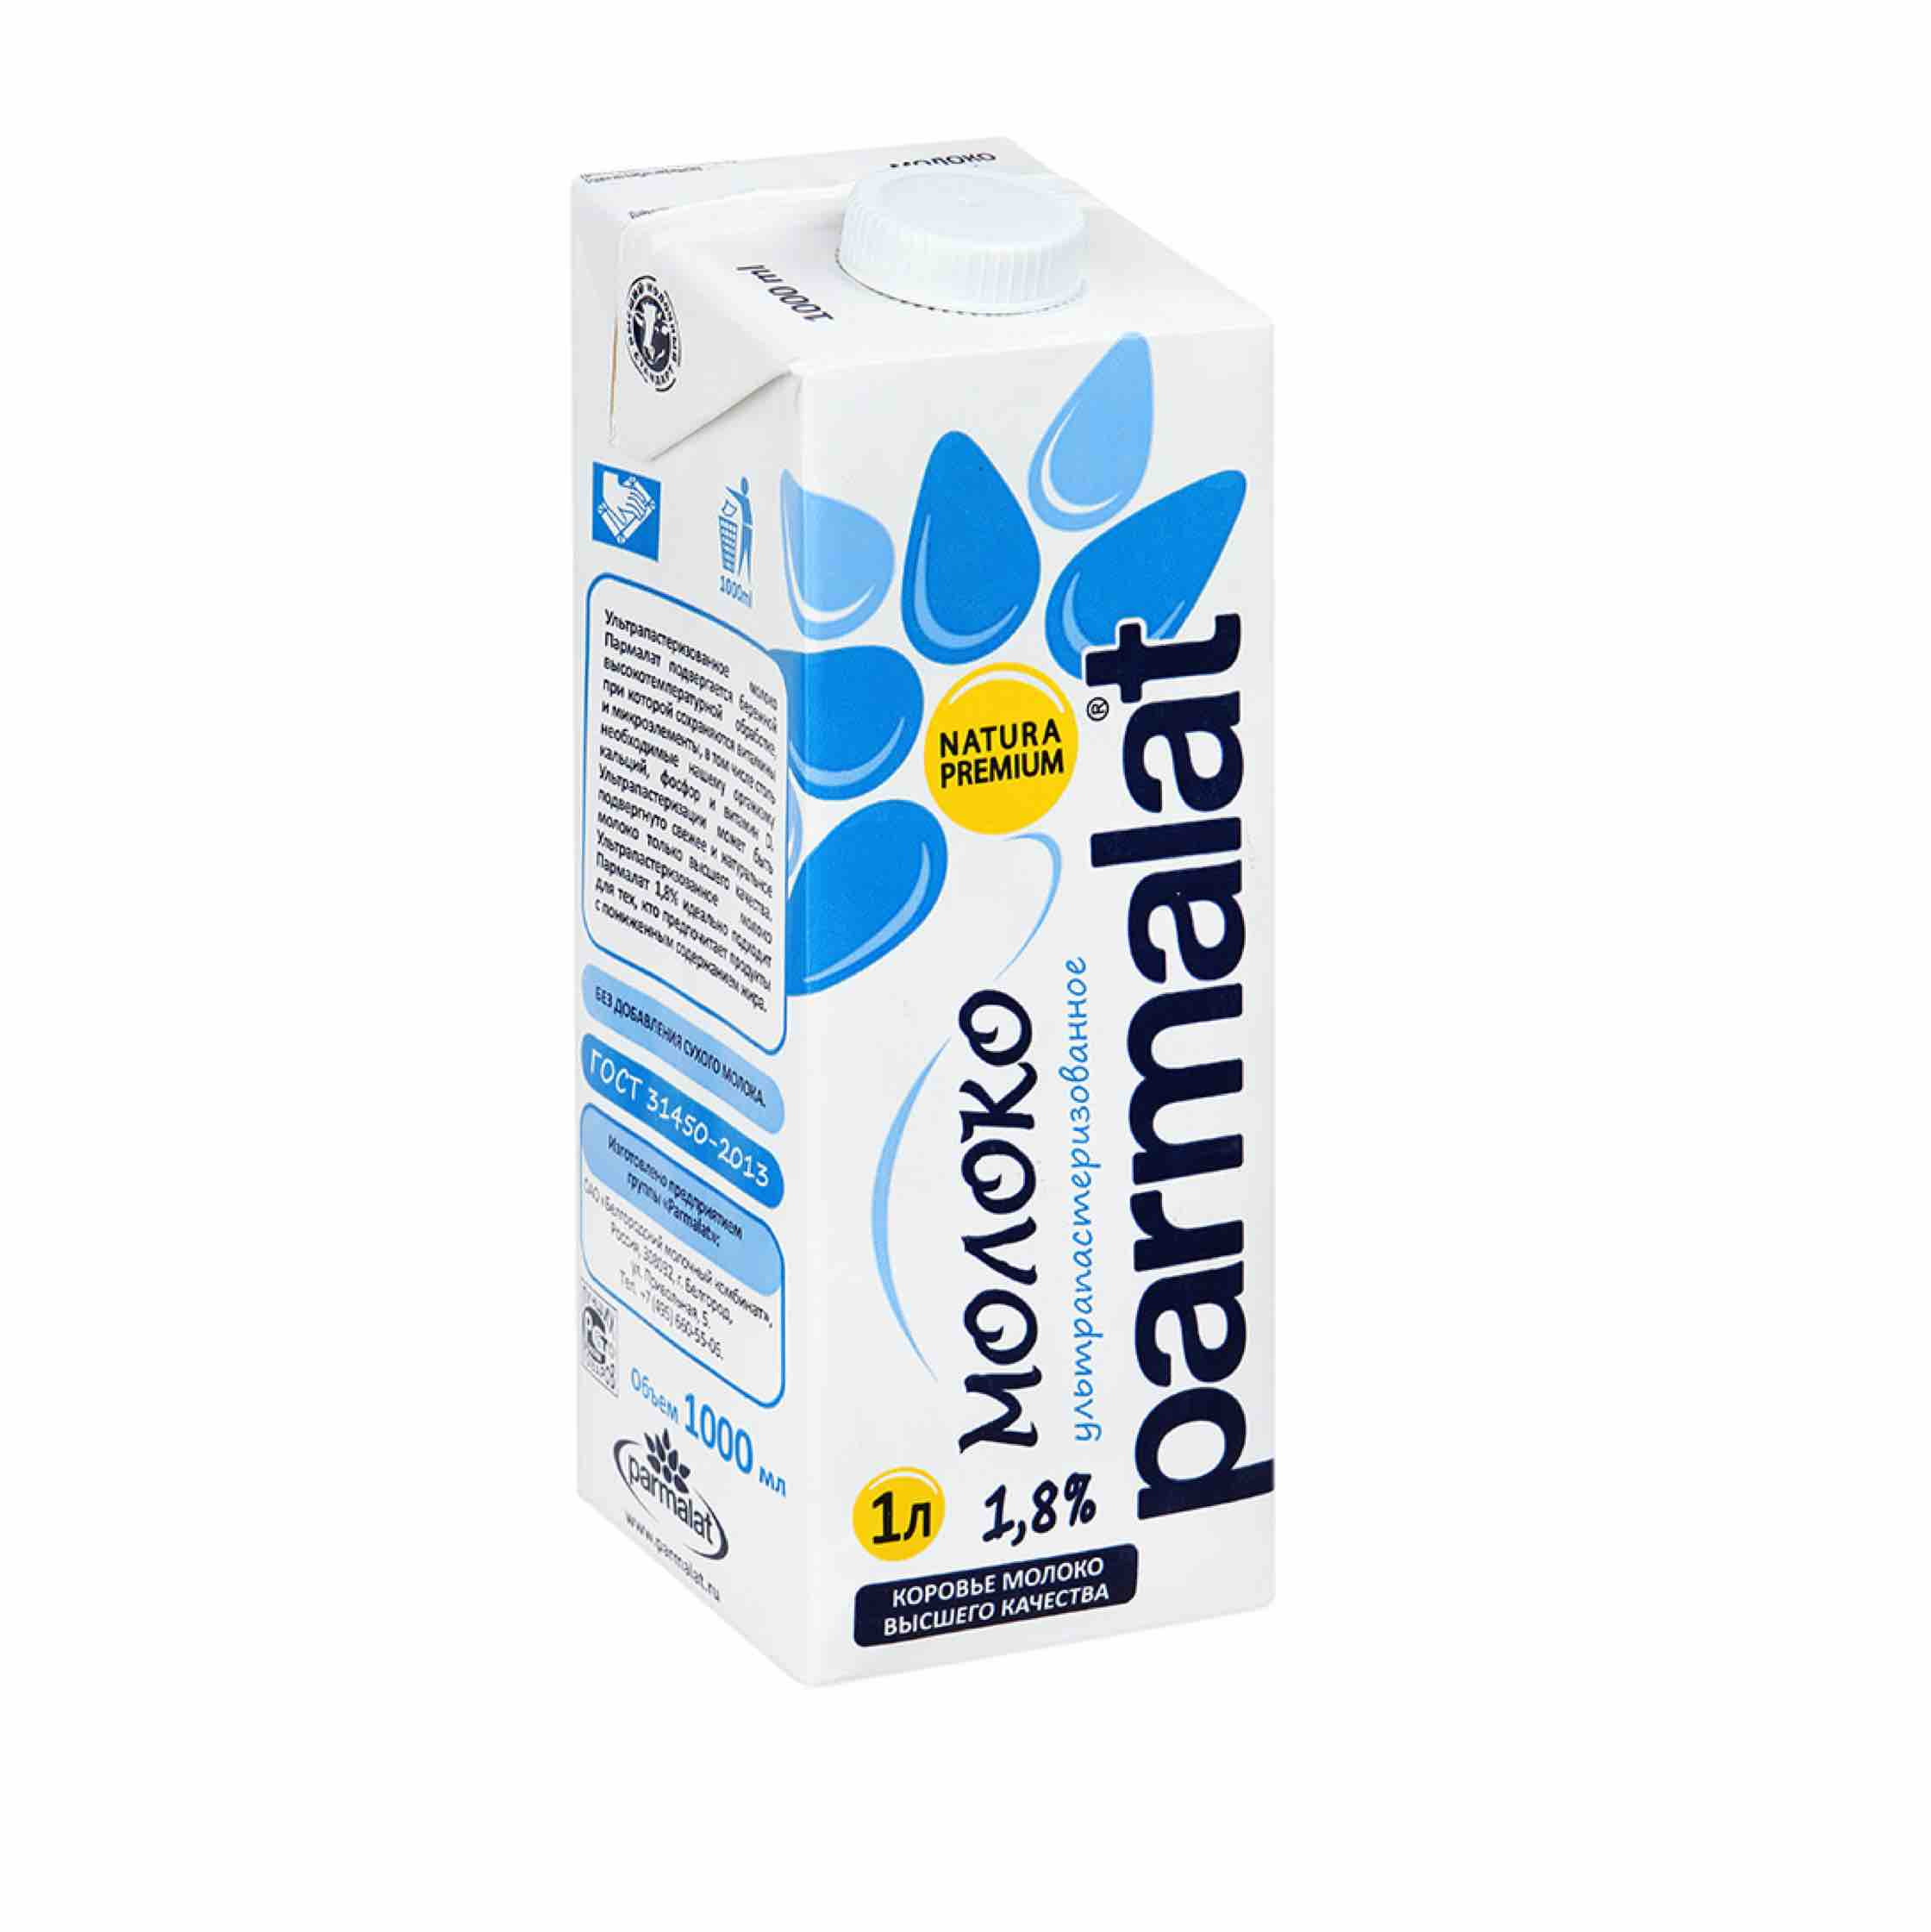 Купить молоко 1 л. Parmalat молоко ультрапастеризованное 1.8 % 1л. Молоко 0.05 Parmalat. Молоко Пармалат 1.5. Молоко Parmalat Natura Premium ультрапастеризованное 1.8%.